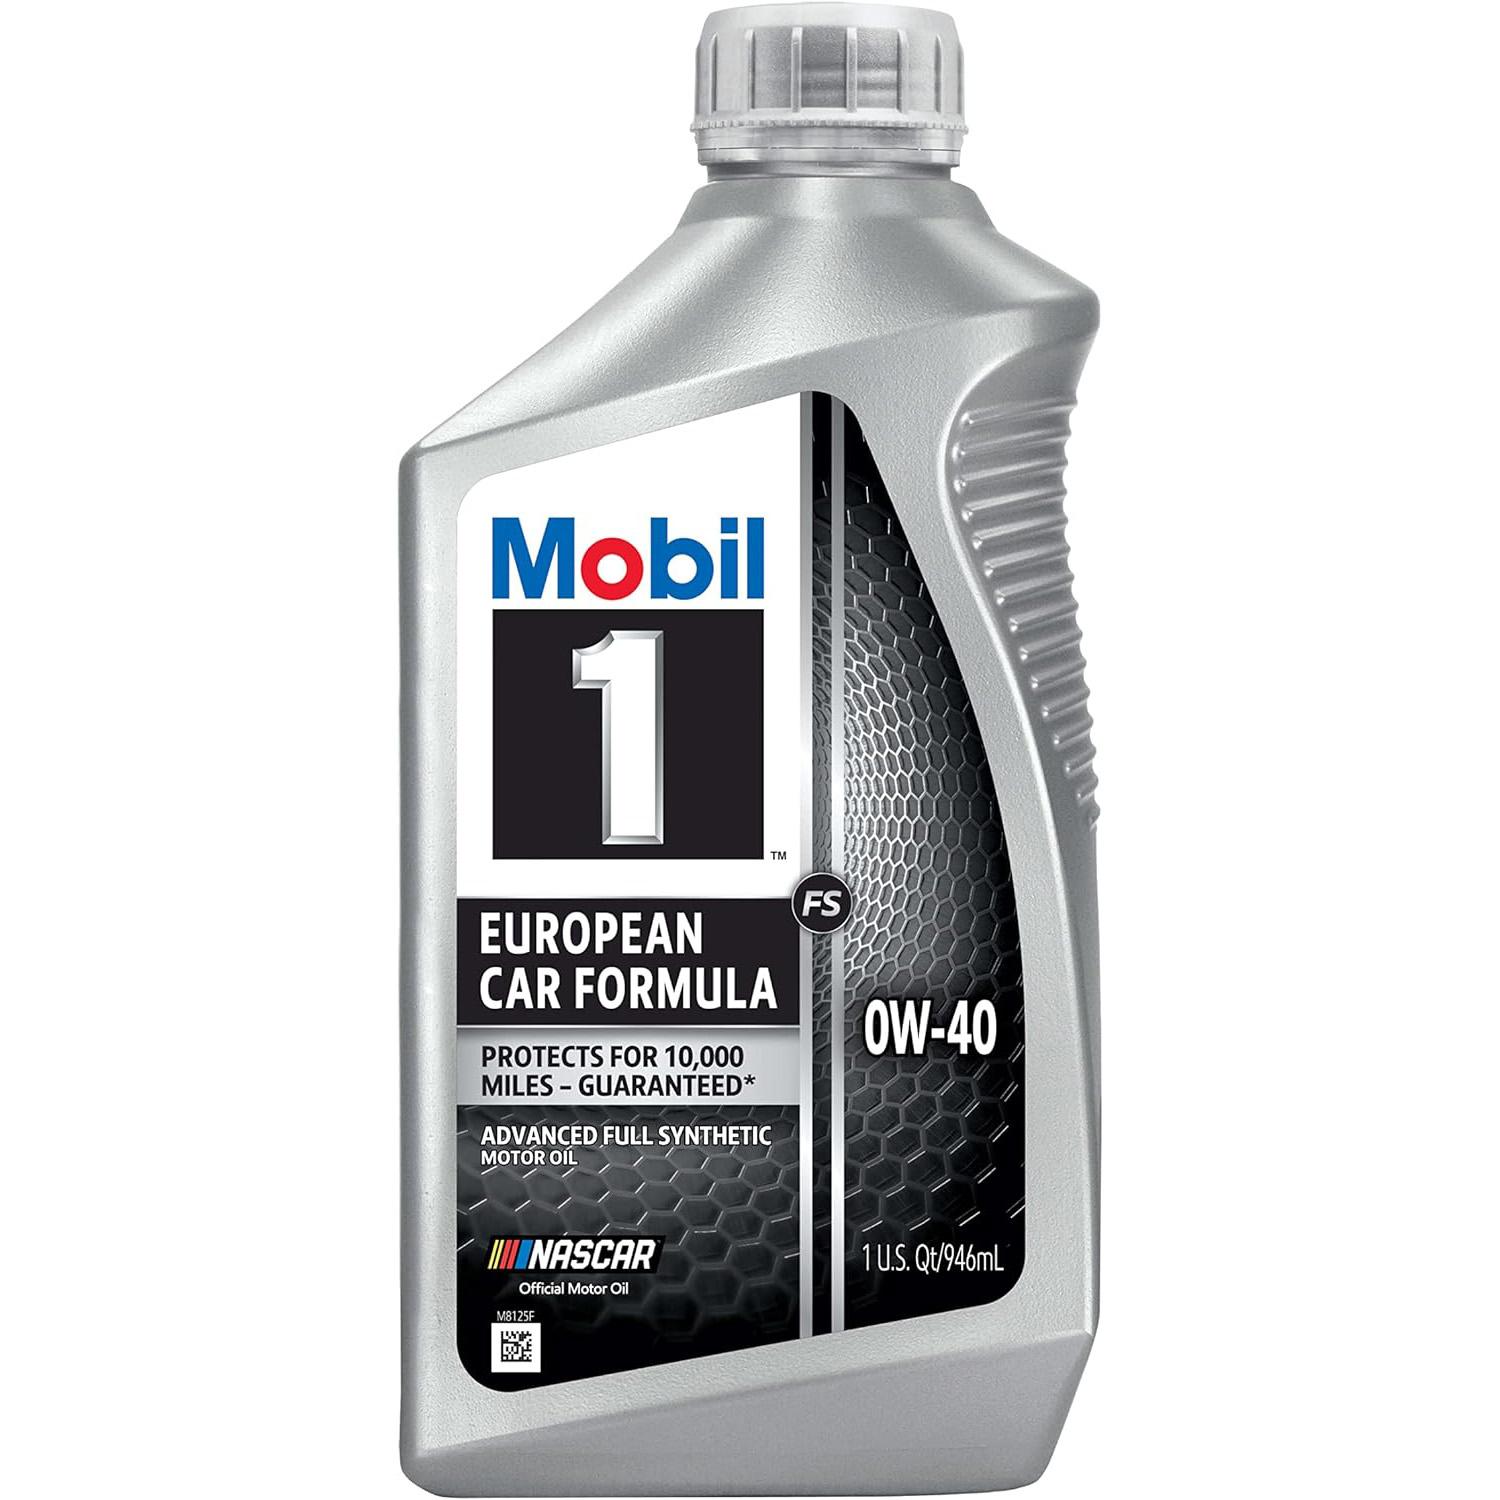 Mobil 1 FS European Car Formula Full Synthetic Motor Oil 0W-40 for $28.49 Shipped